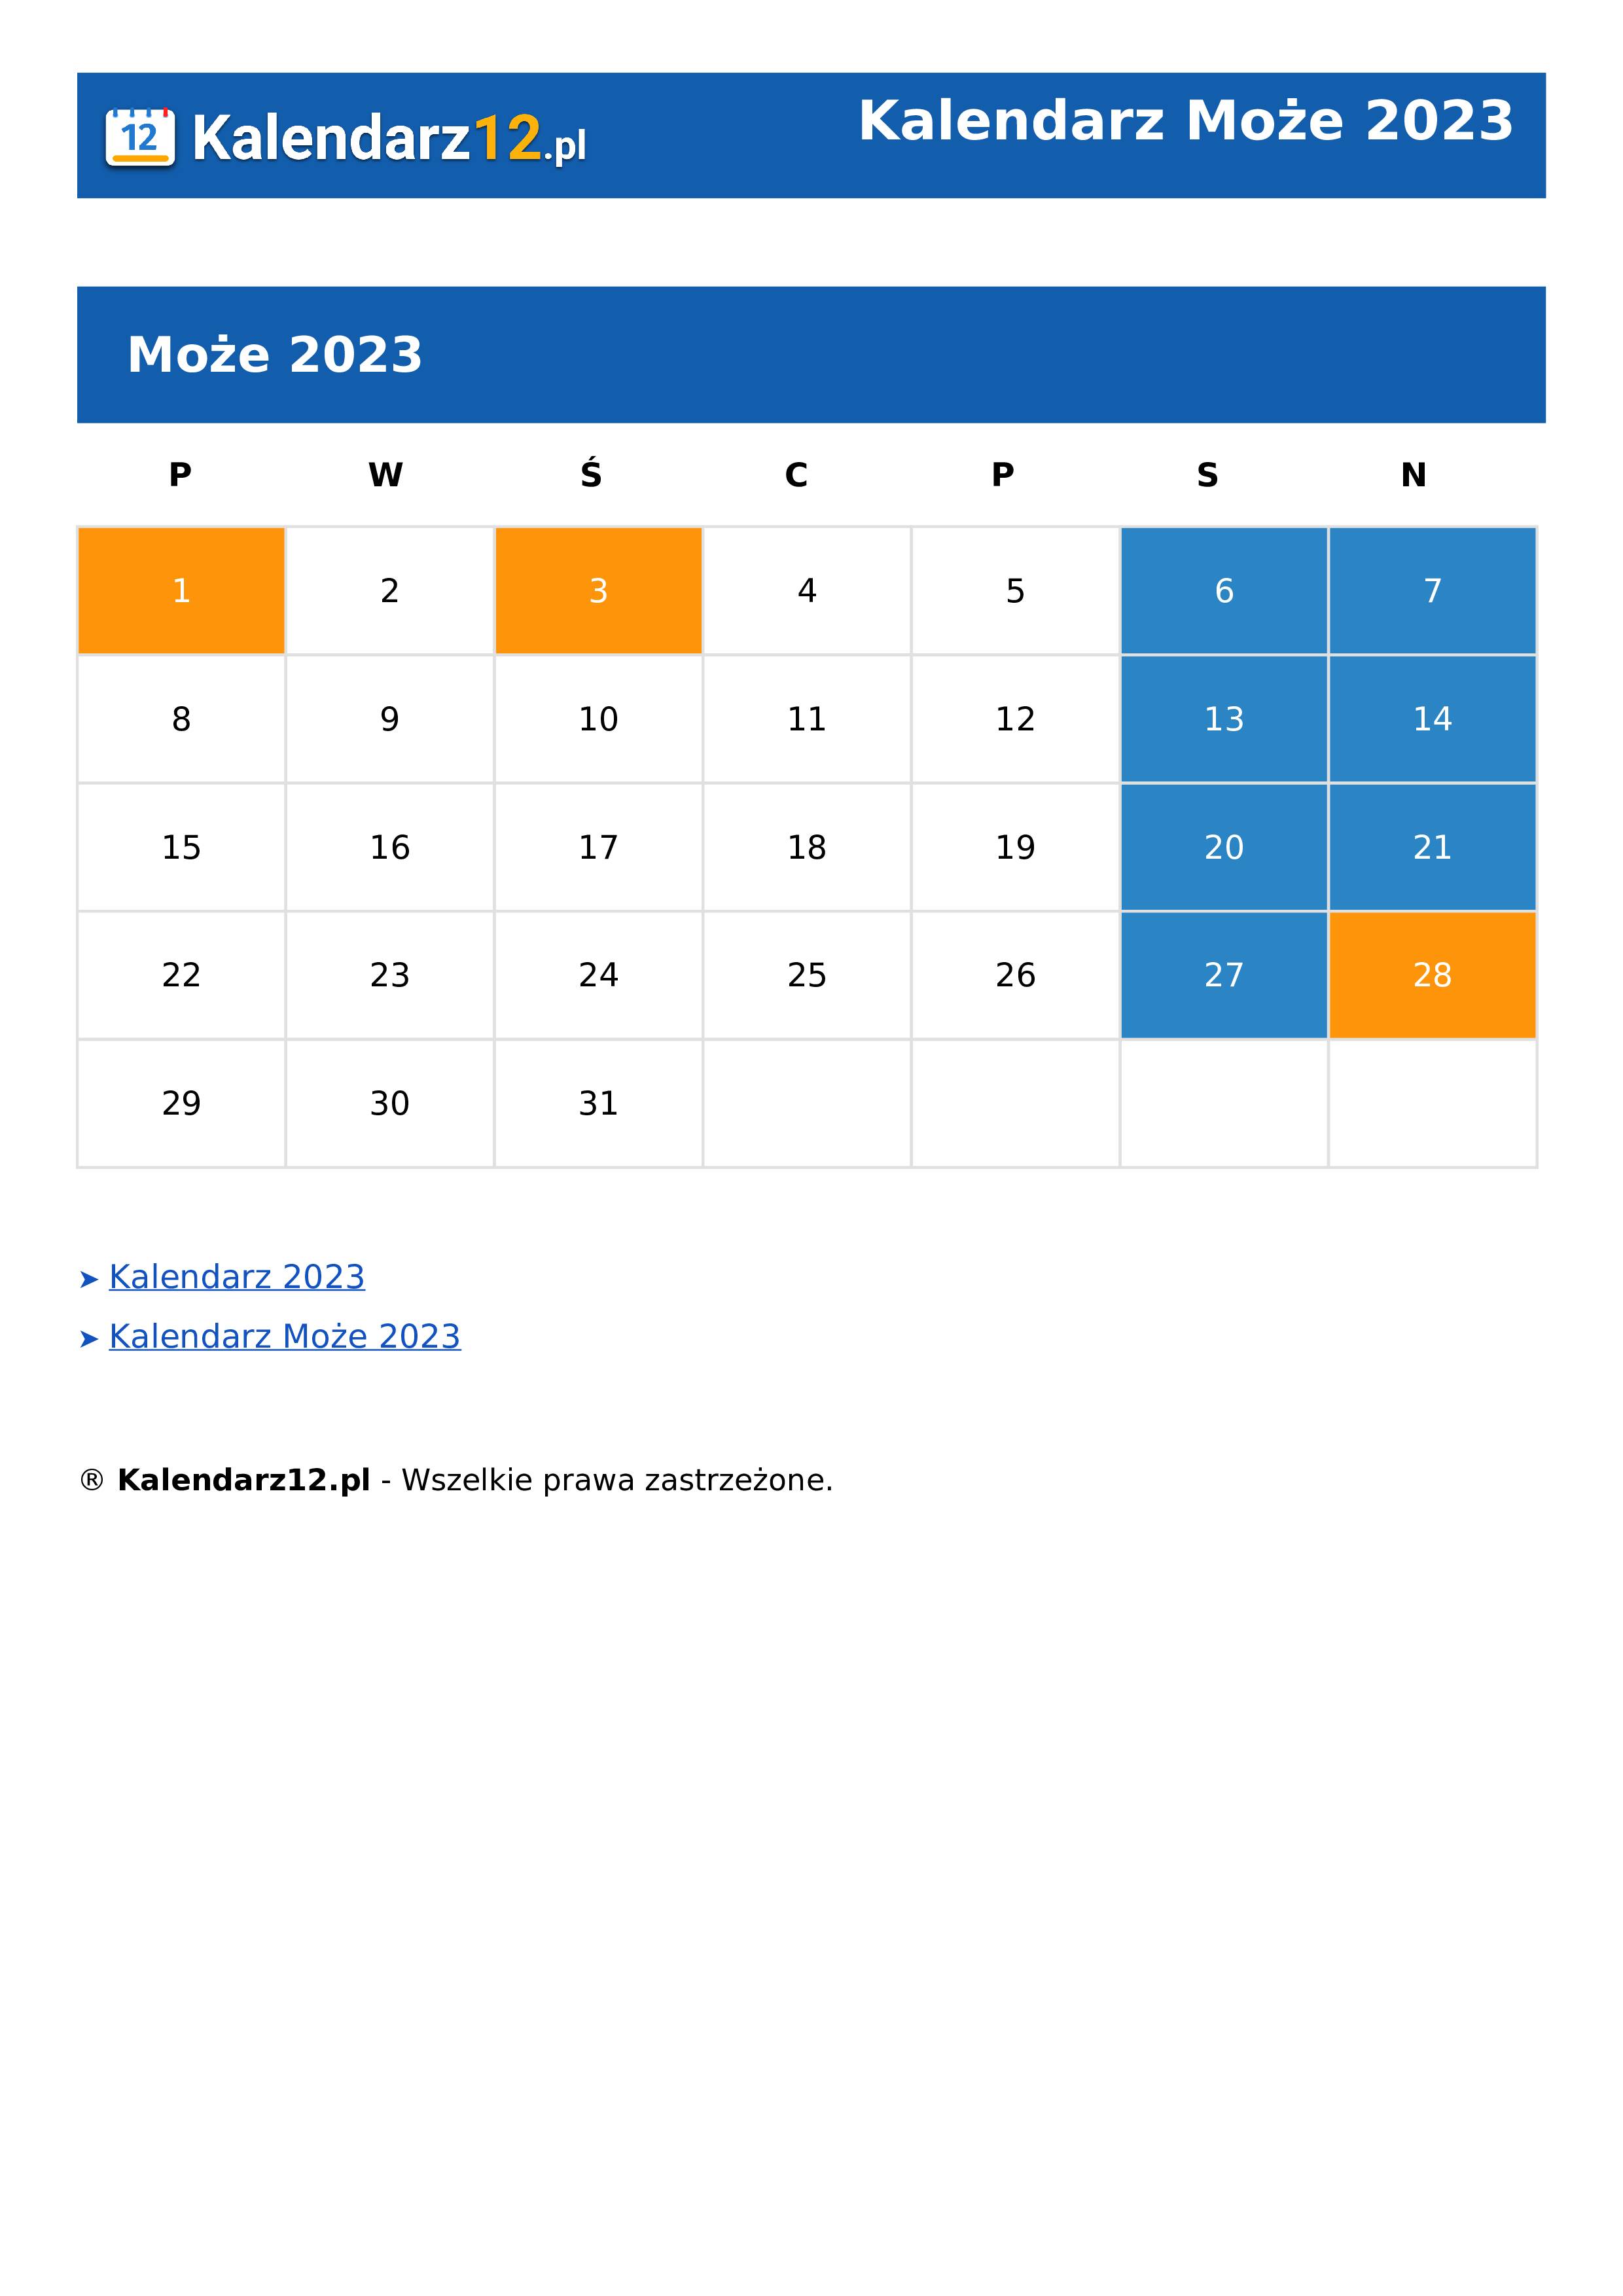 Calendar Może 2023